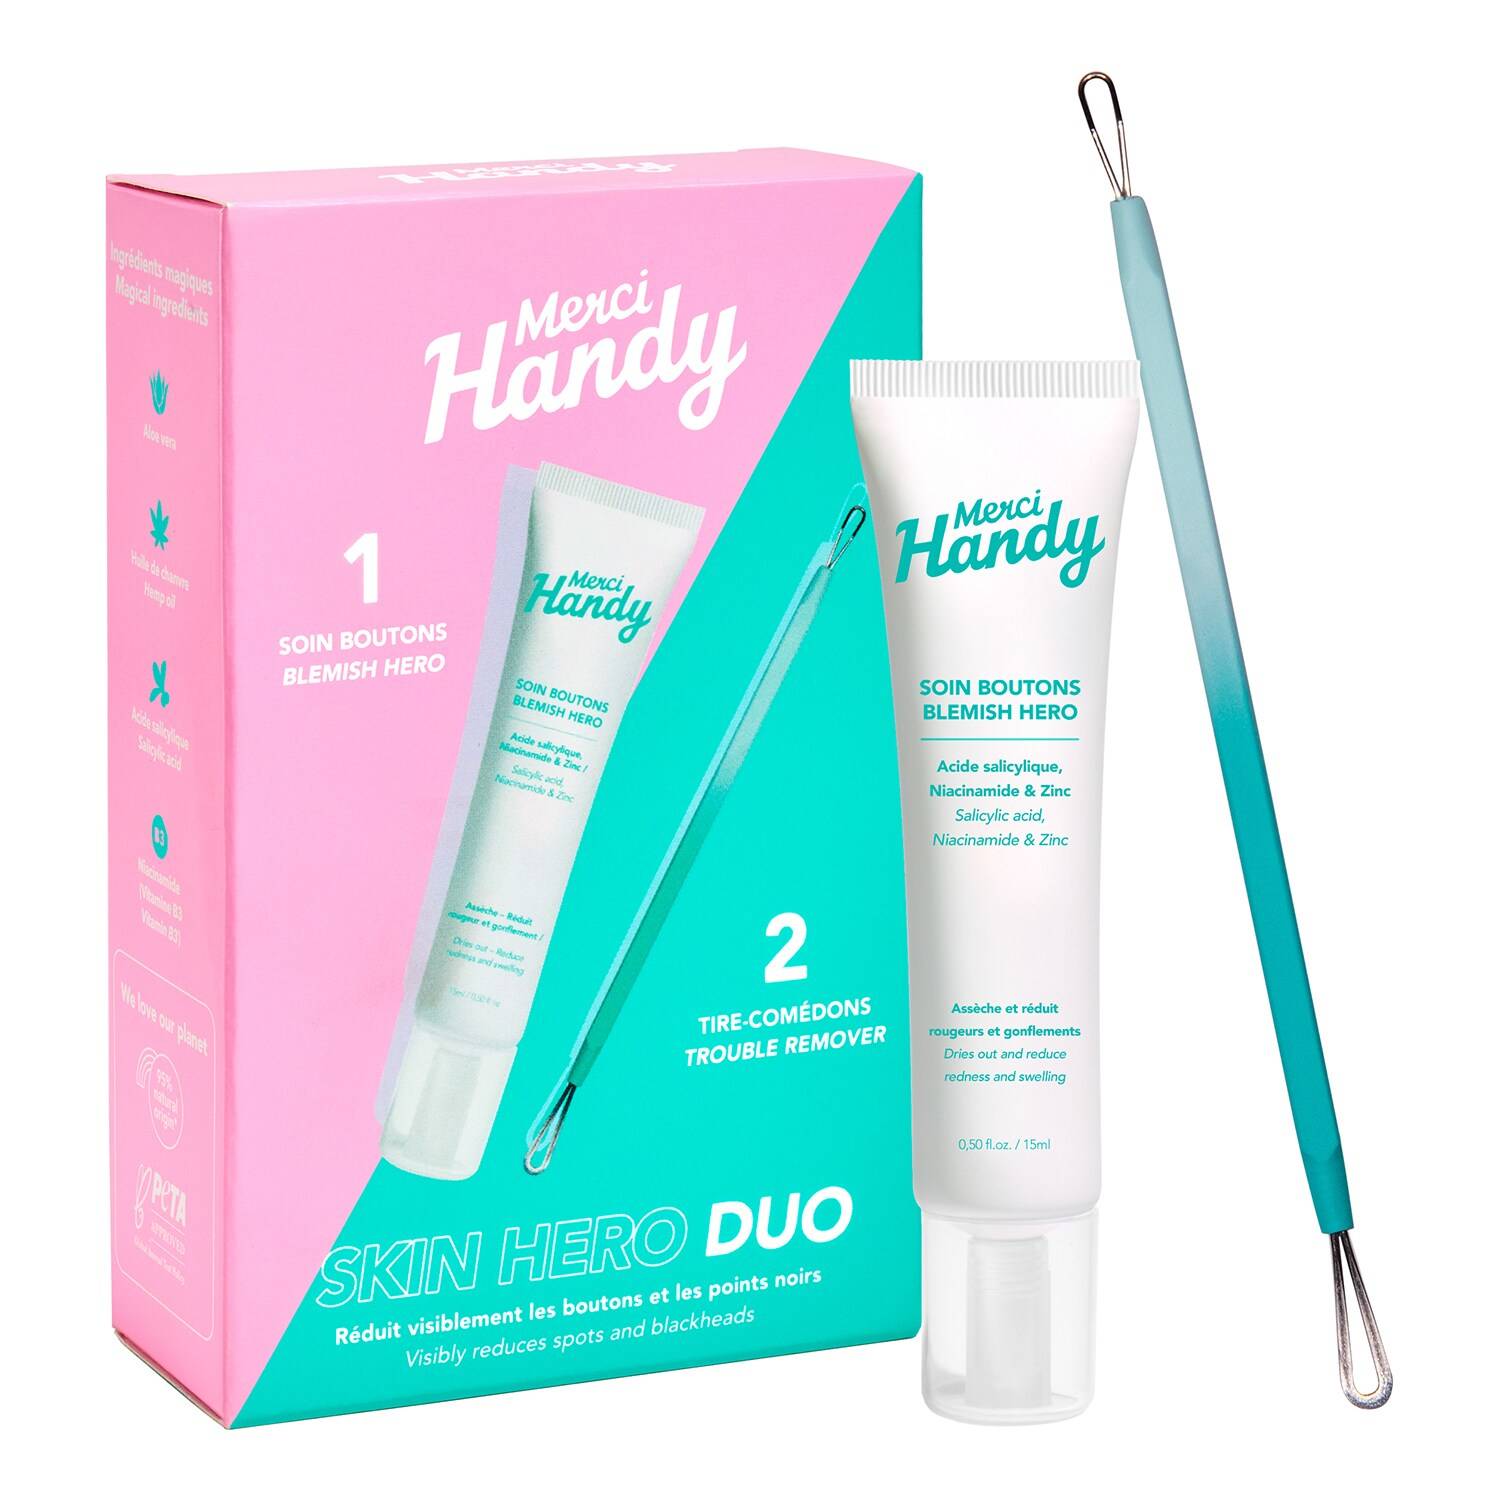 Merci Handy Kit Skin Hero Blemish Care Duo